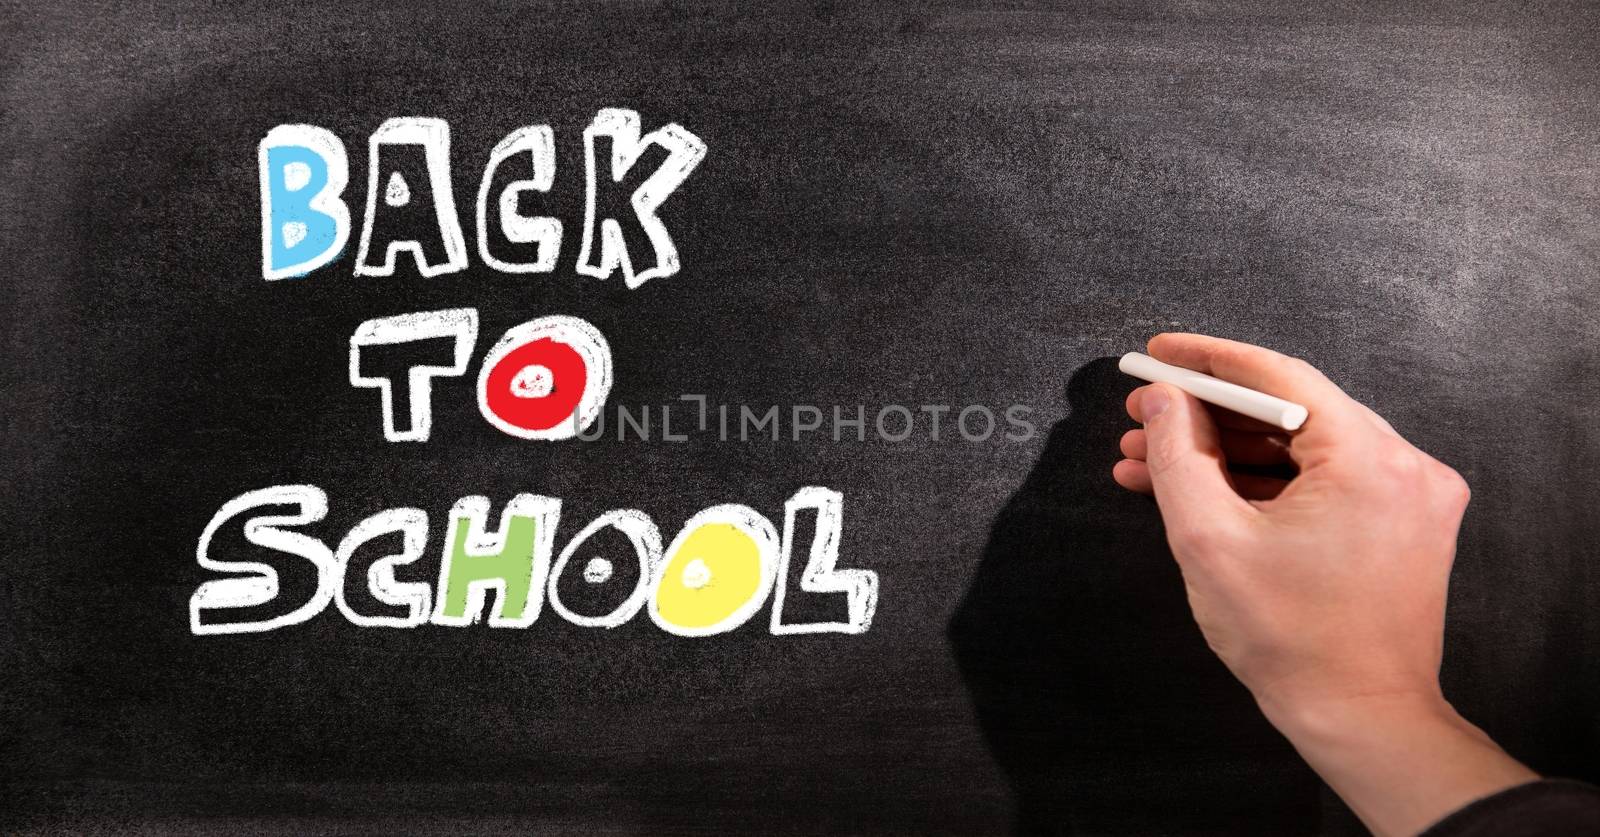 Back to school education drawings on blackboard for school by Wavebreakmedia